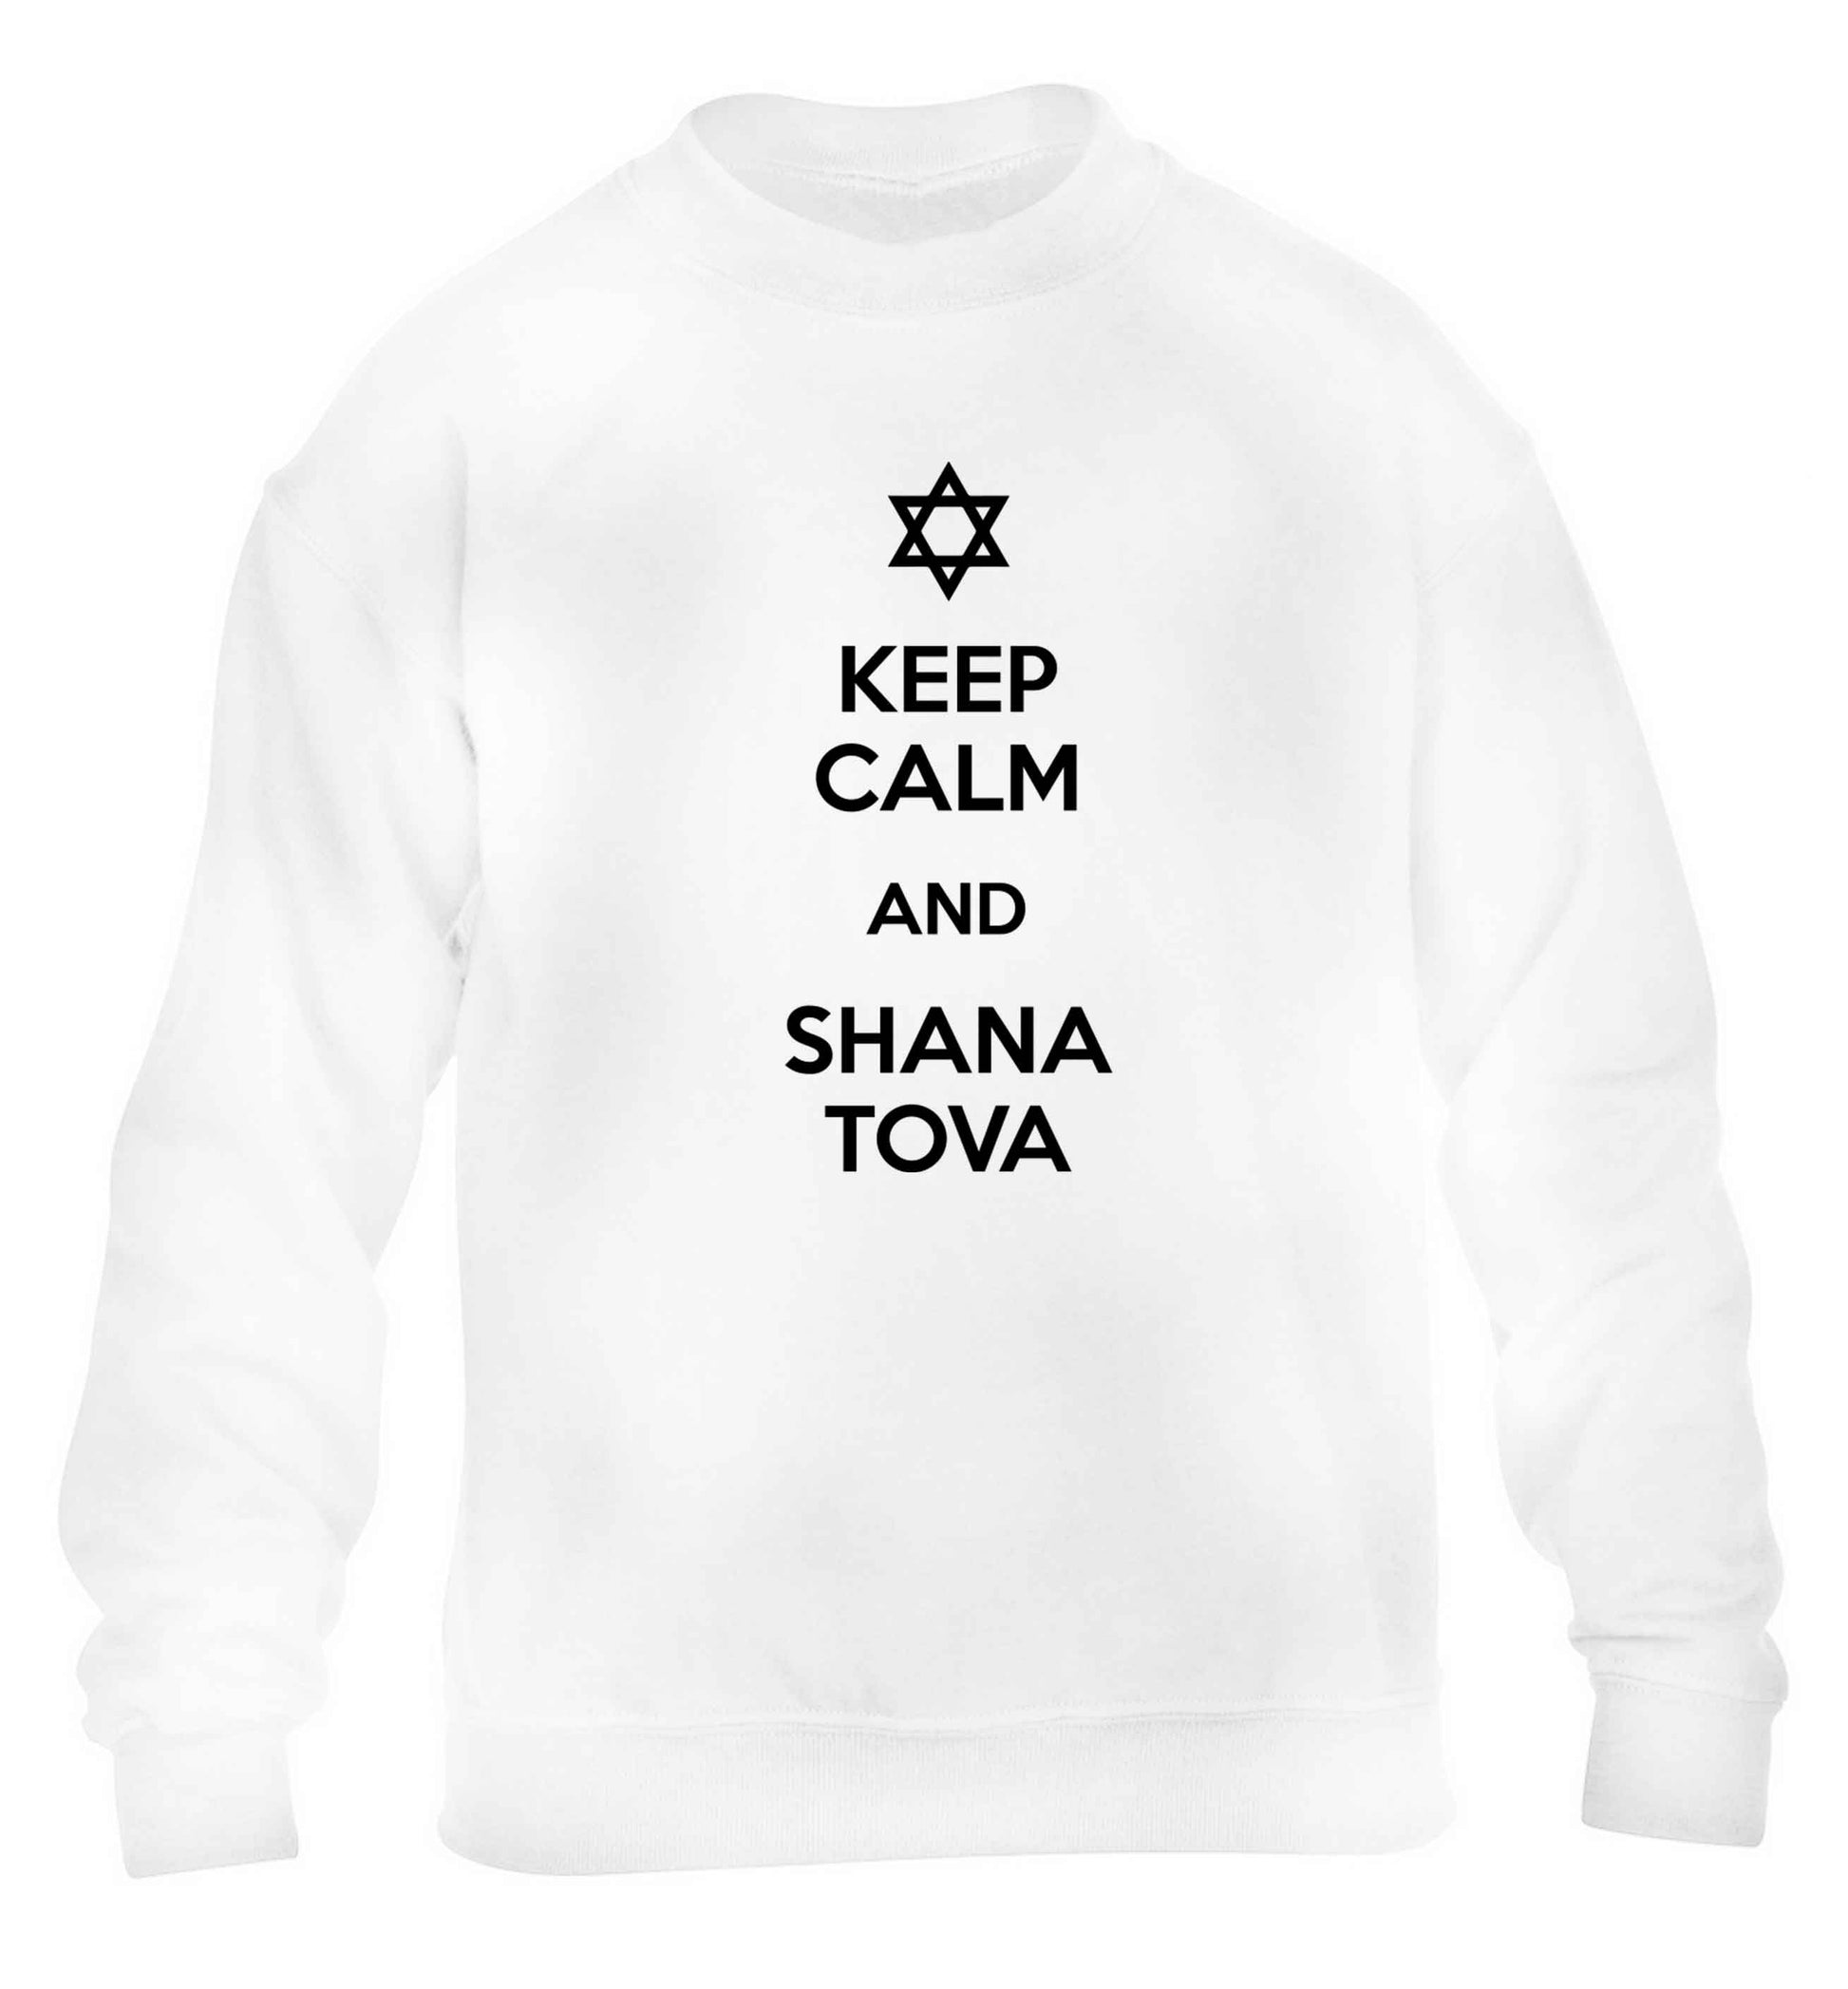 Keep calm and shana tova children's white sweater 12-13 Years